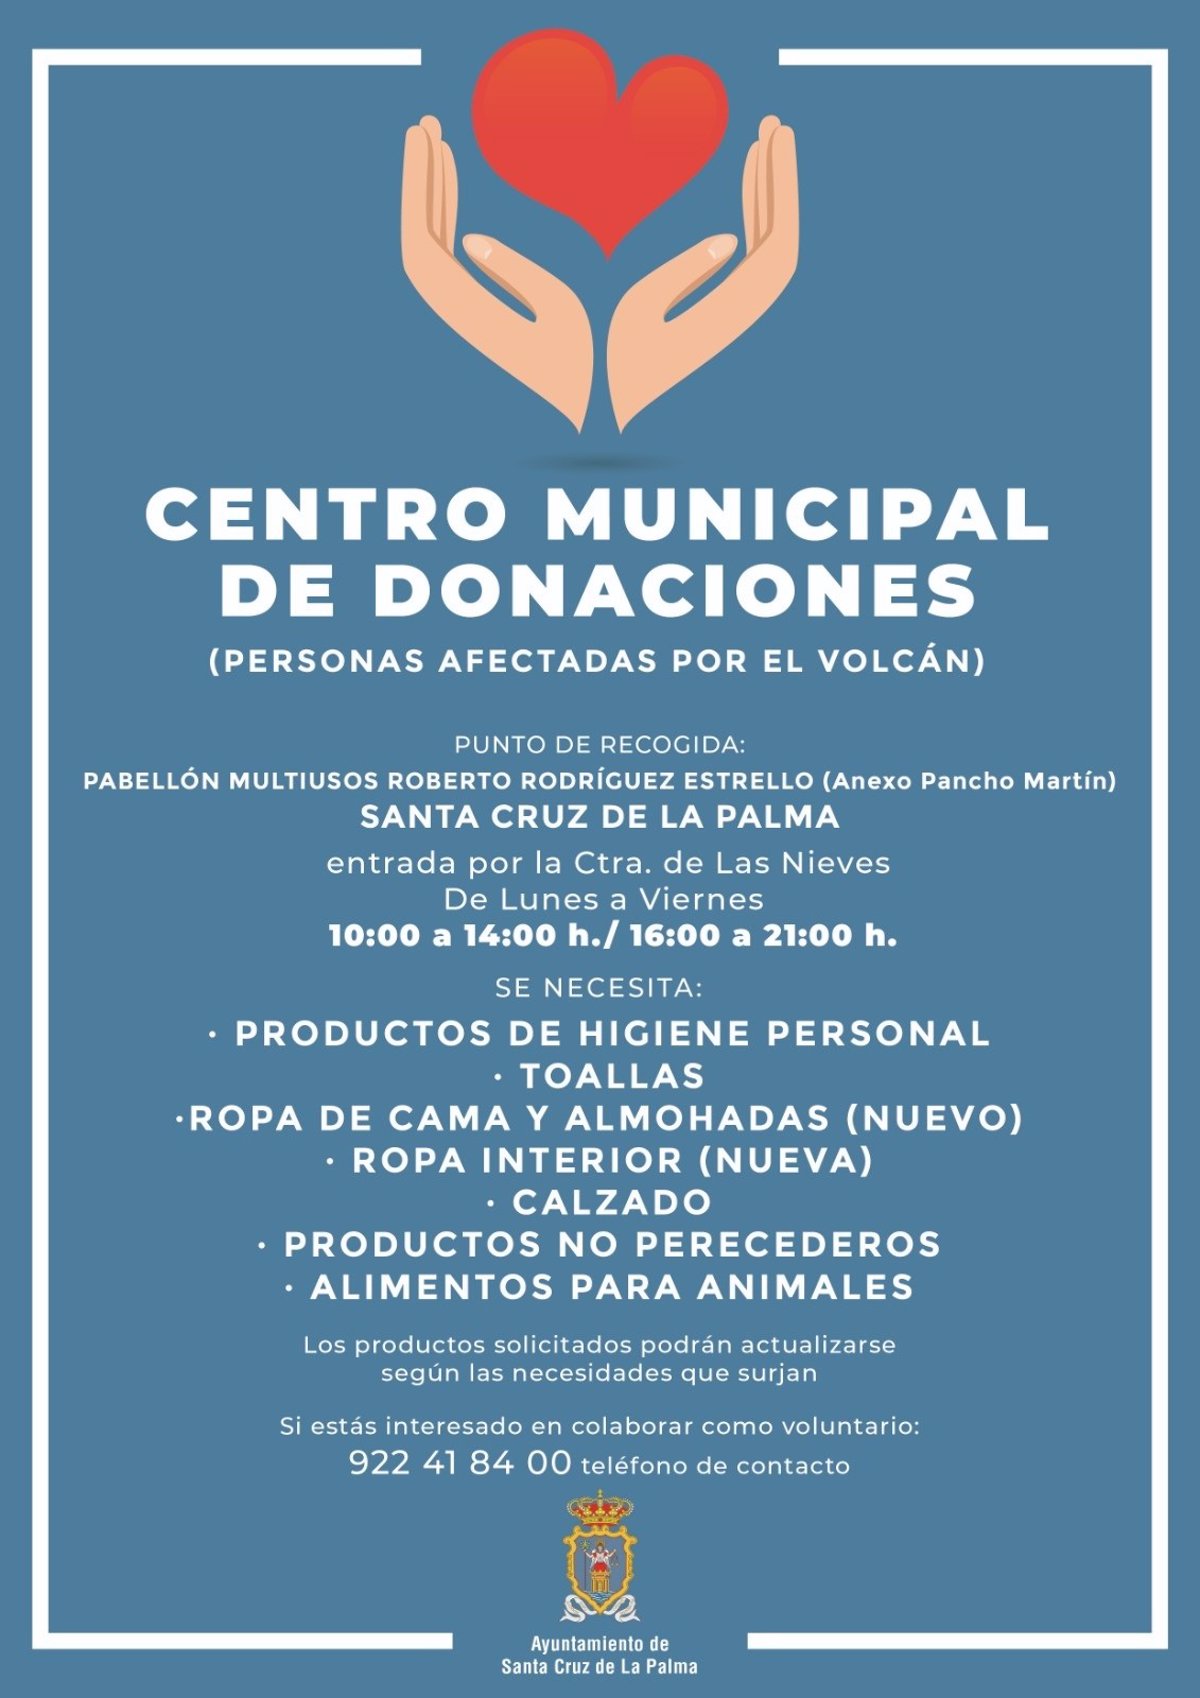 Santa Cruz de La Palma habilita un centro de donaciones en el anexo del  pabellón Roberto Rodríguez Estrello